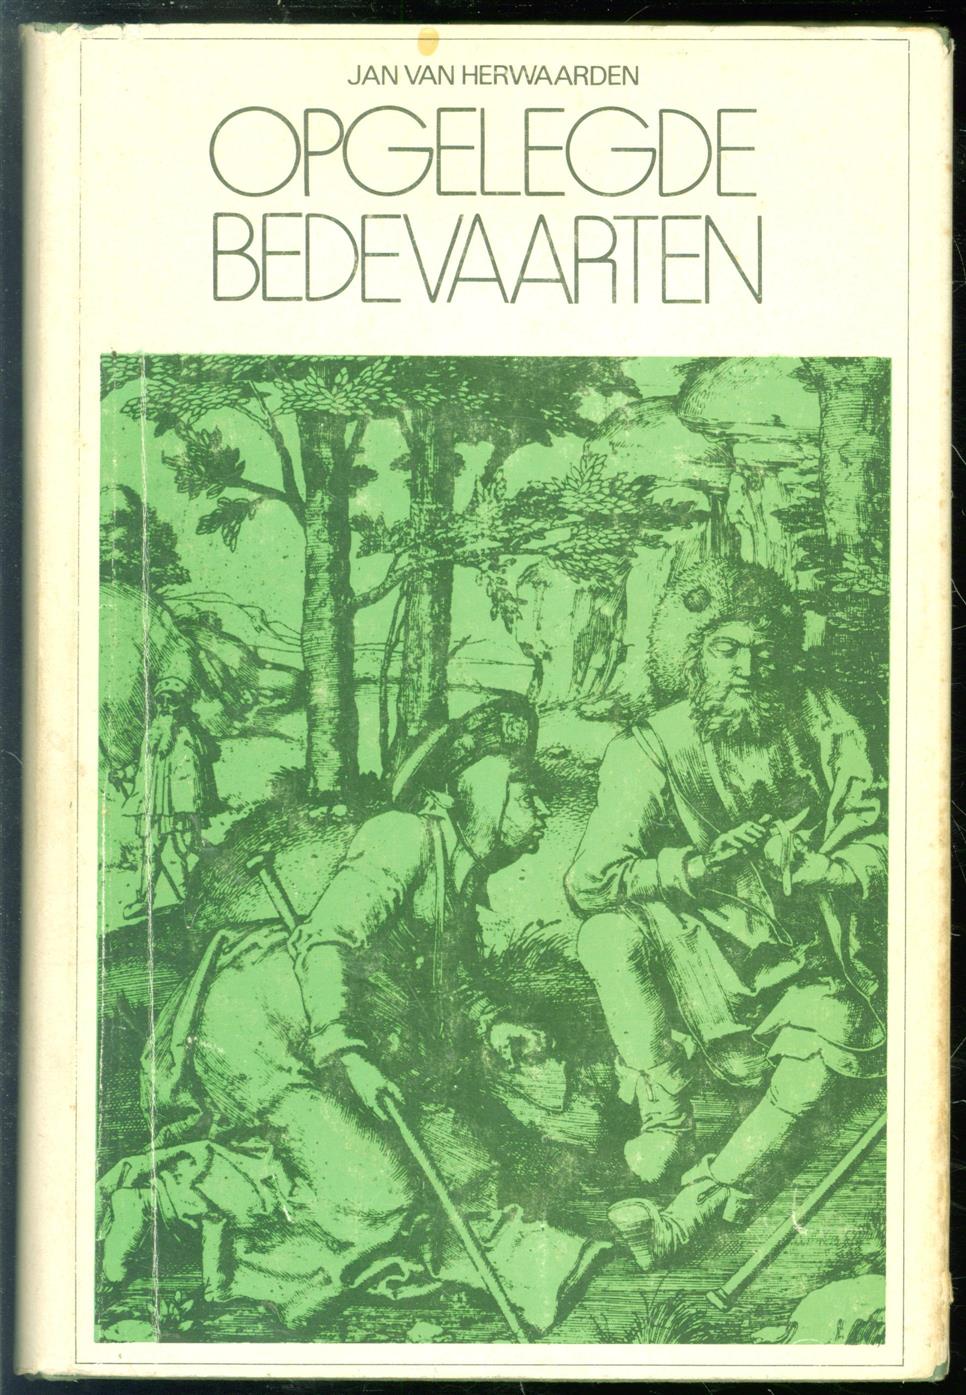 HERWAARDEN, J. VAN - Opgelegde Bedevaarten, een studie over de praktijk van opleggen van bedevaarten (met name in de stedelijke rechtspraak) in de Nederlanden gedurende de late middeleeuwen (ca 1300-ca 1550)